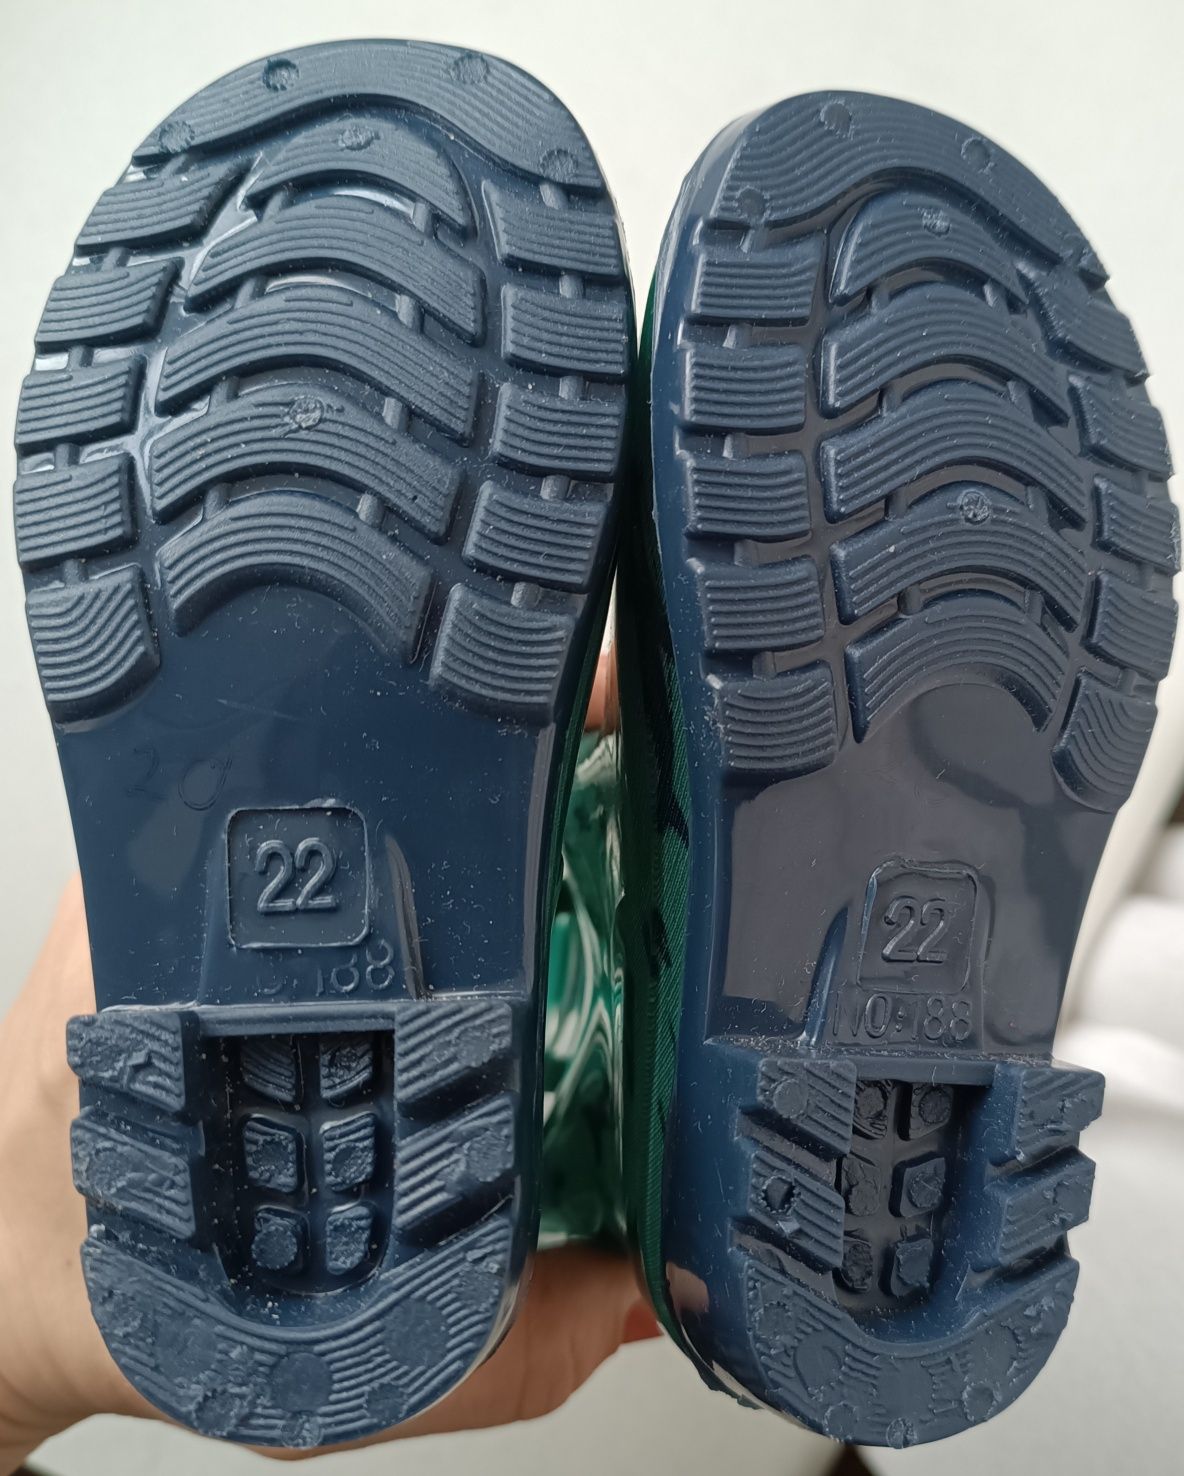 Нові гумові дитячі чоботи, чобітки, ризаки польського бренду PEPCO